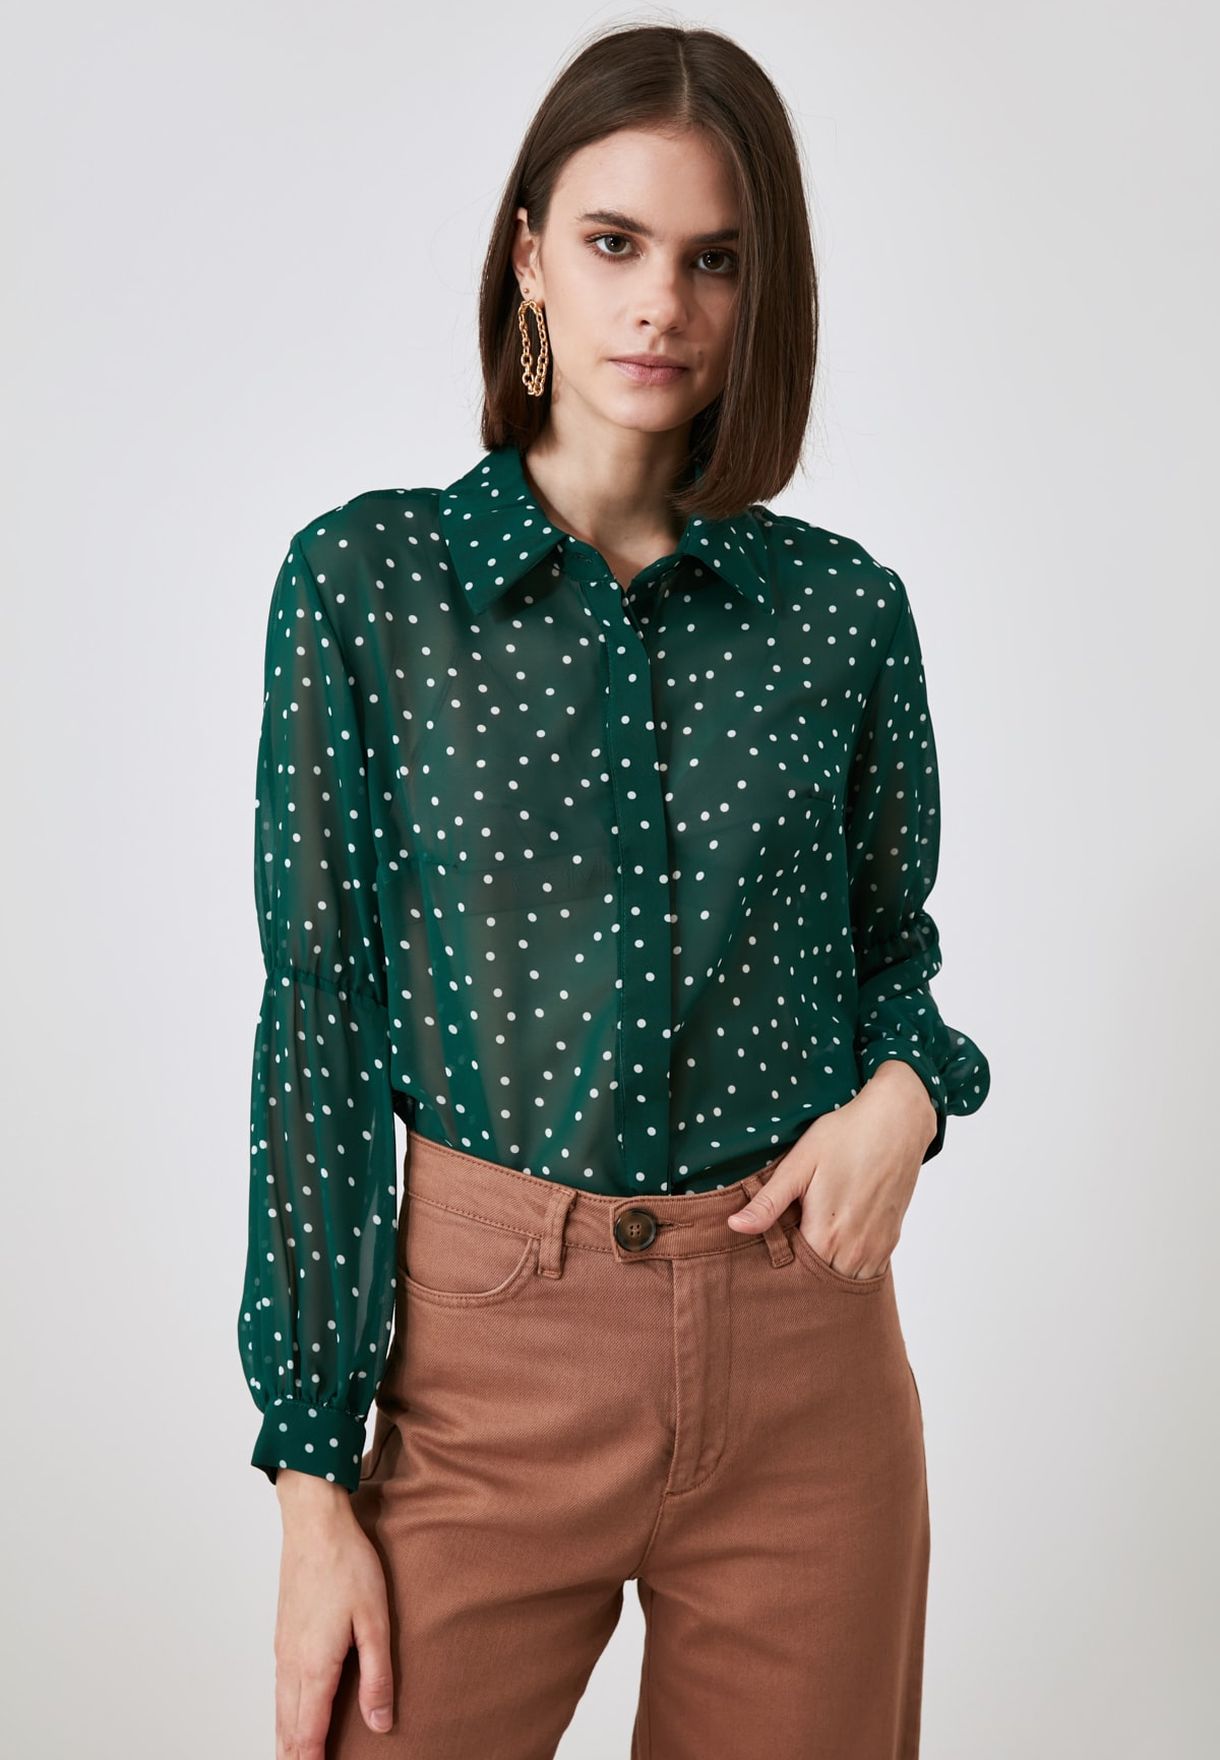 green polka dot shirt